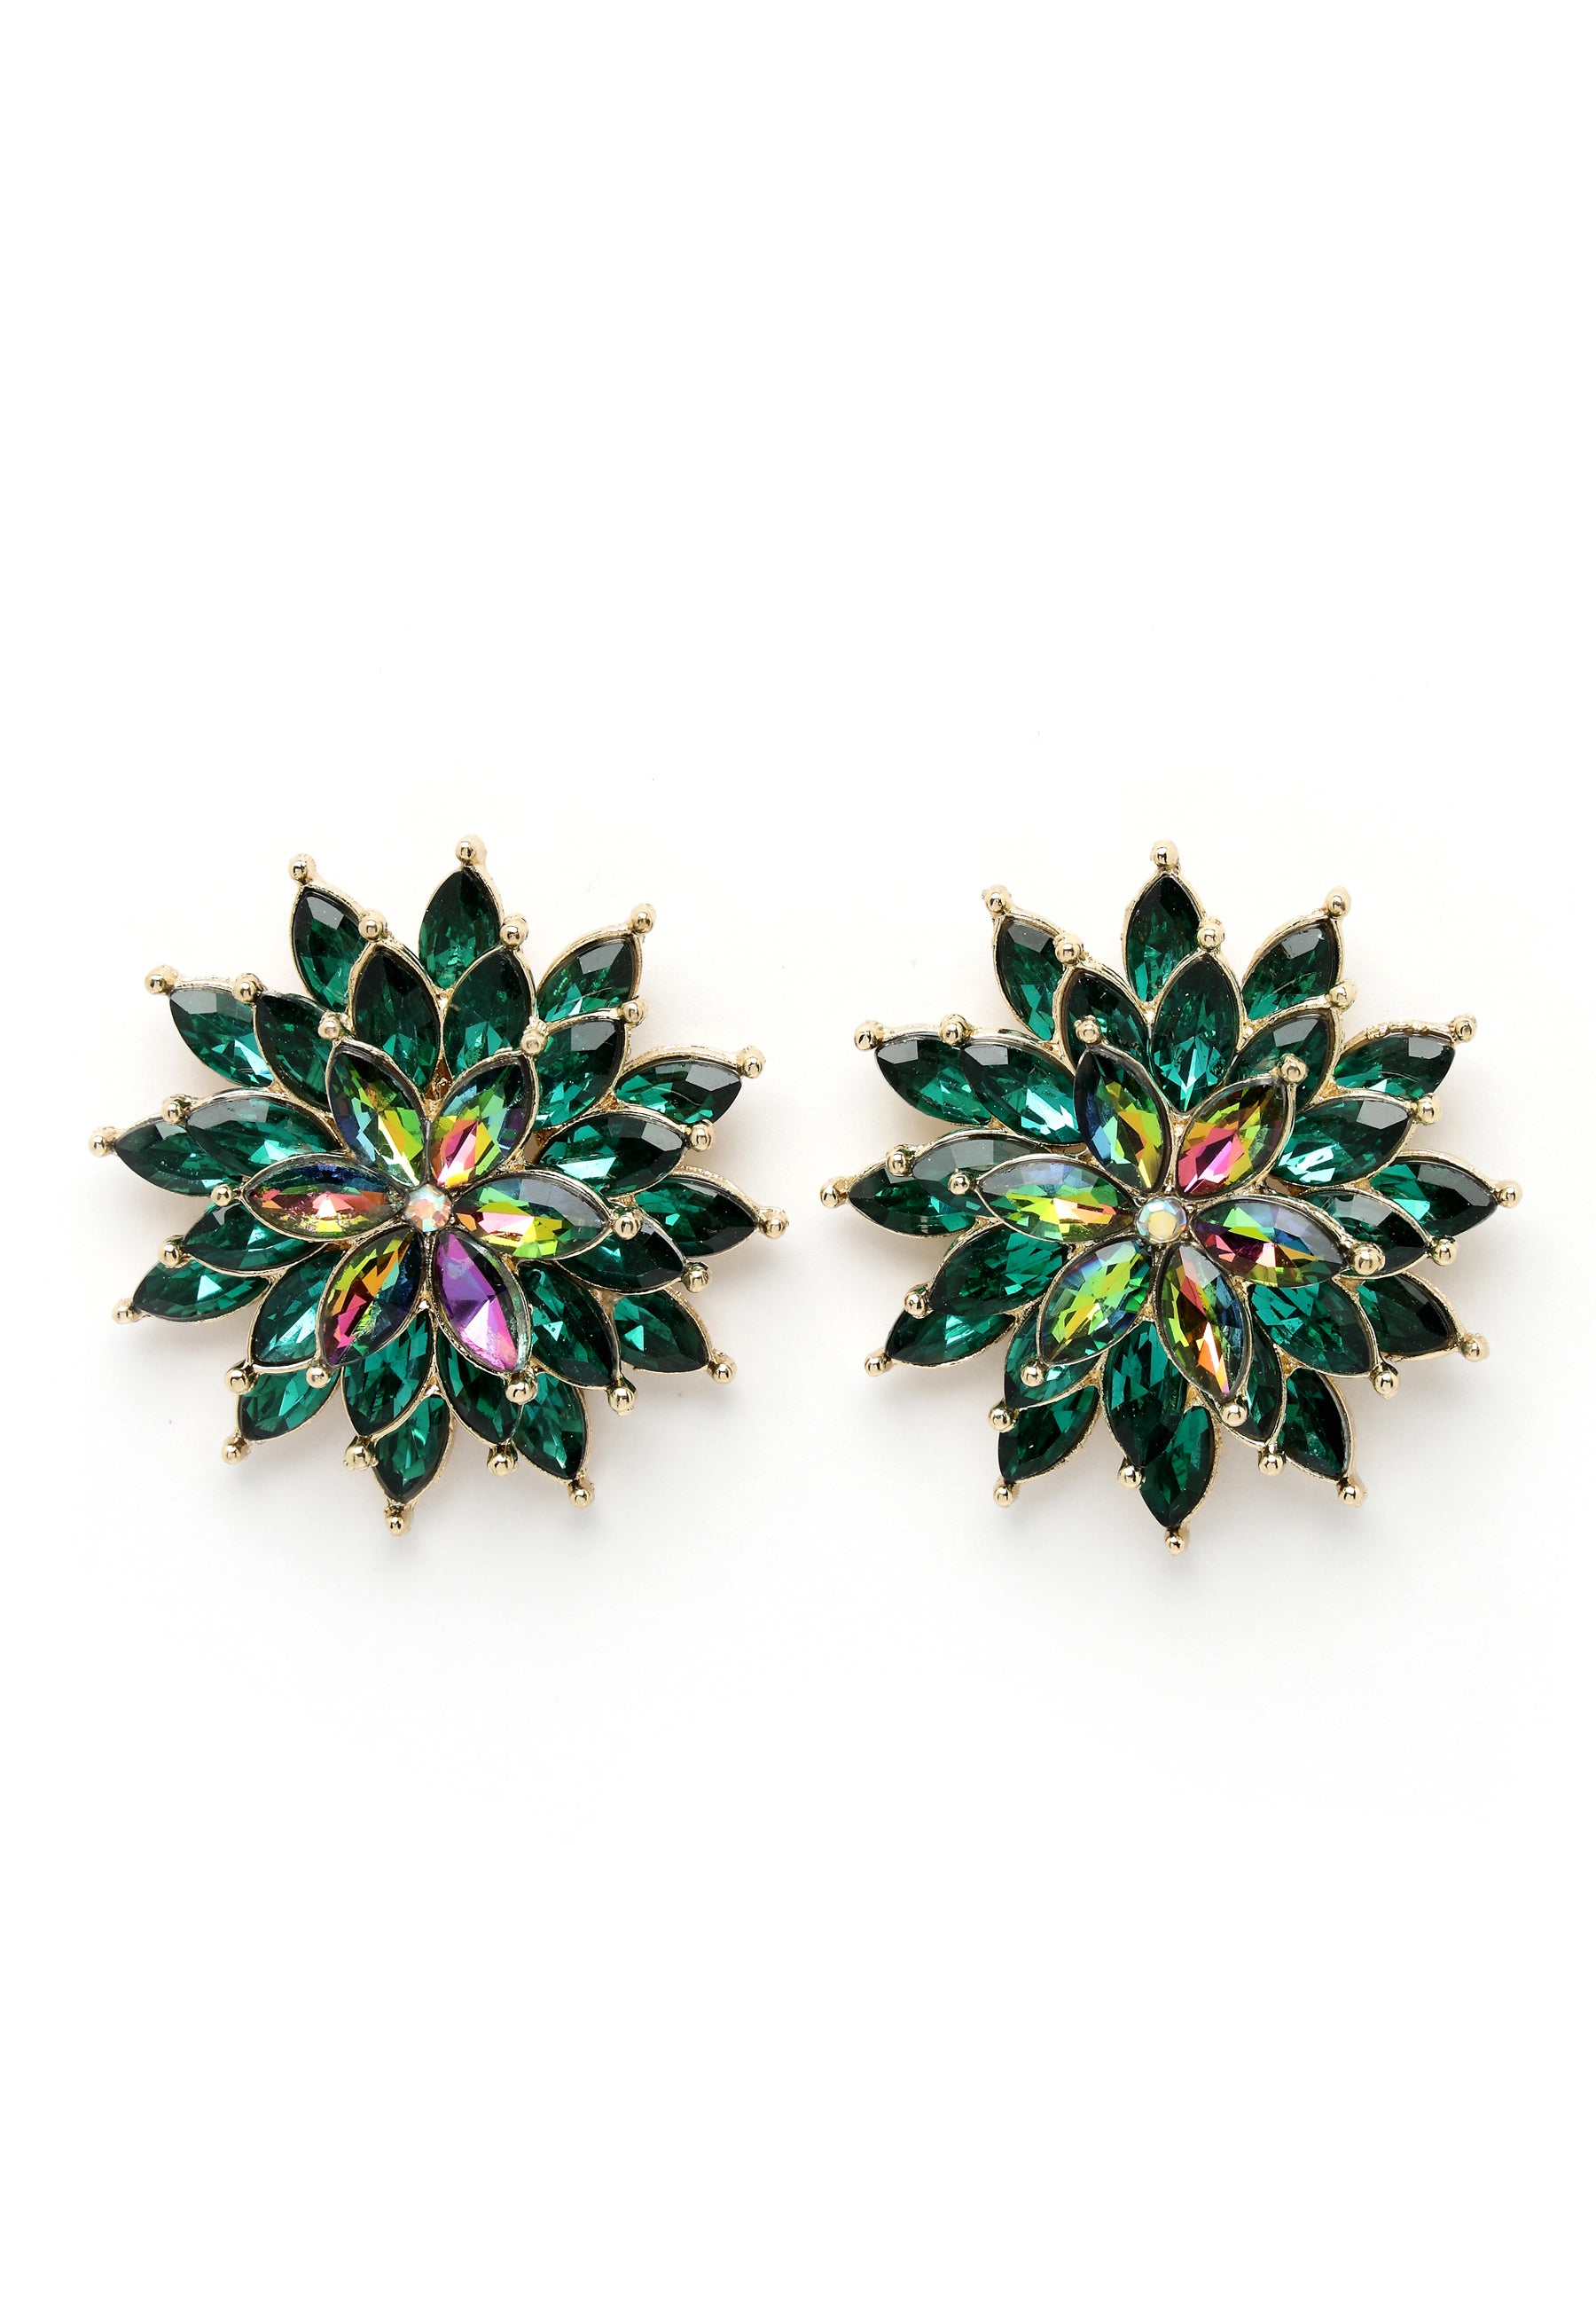 Marigold stud Earrings in green